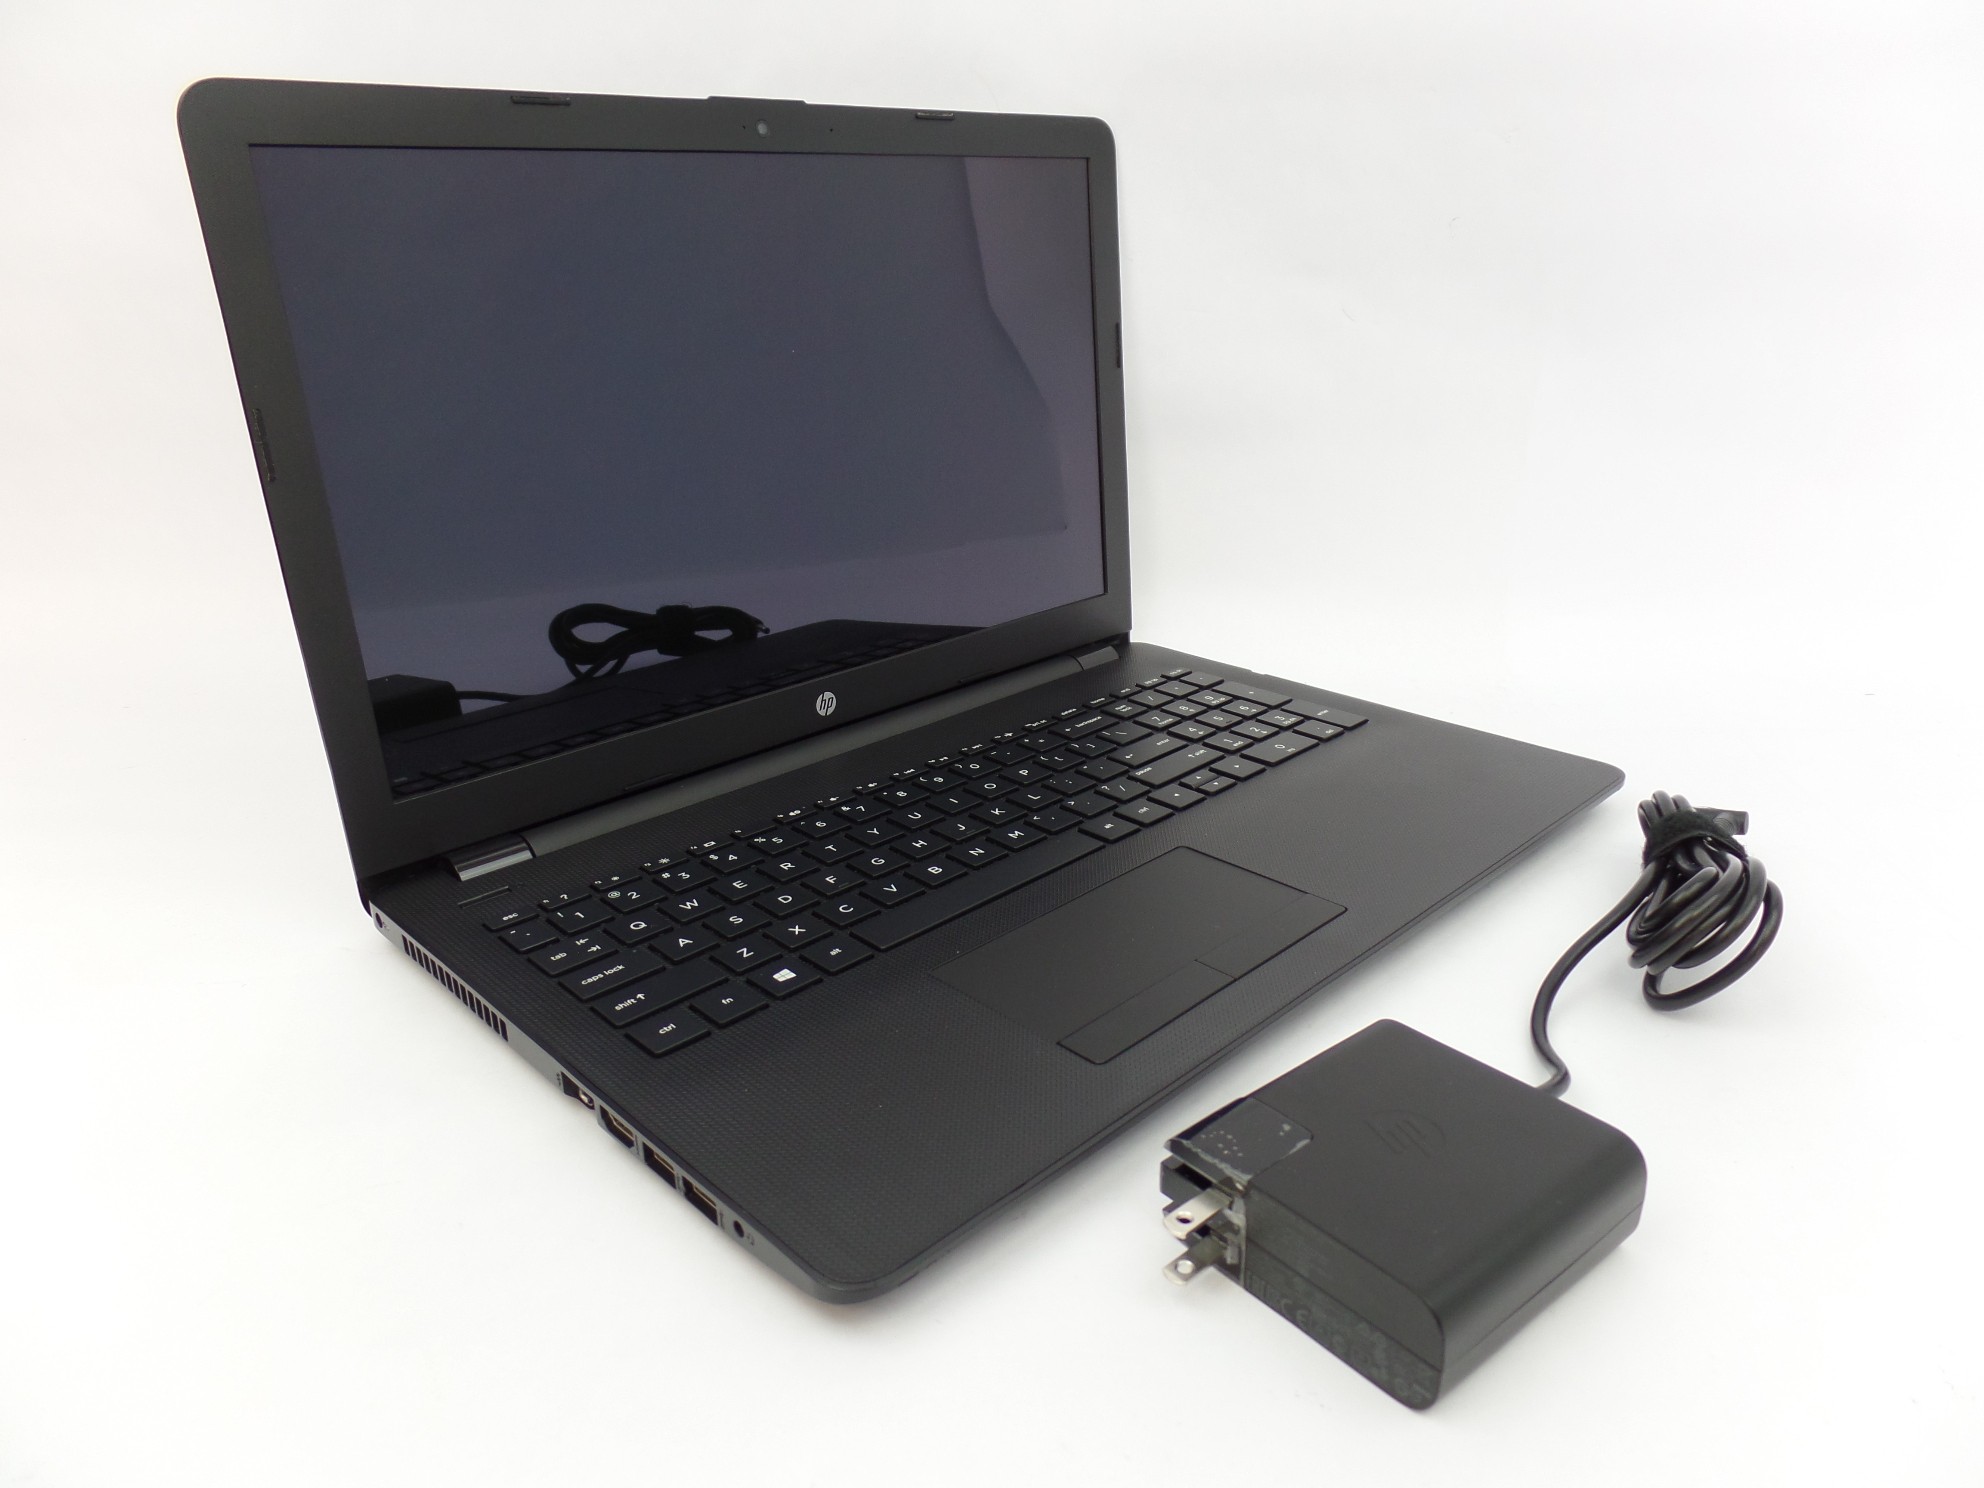 HP 15-bs013dx 15.6" HD Touch i3-7100U 2.4GHz 8GB 1TB W10H 1TJ81UA Laptop U